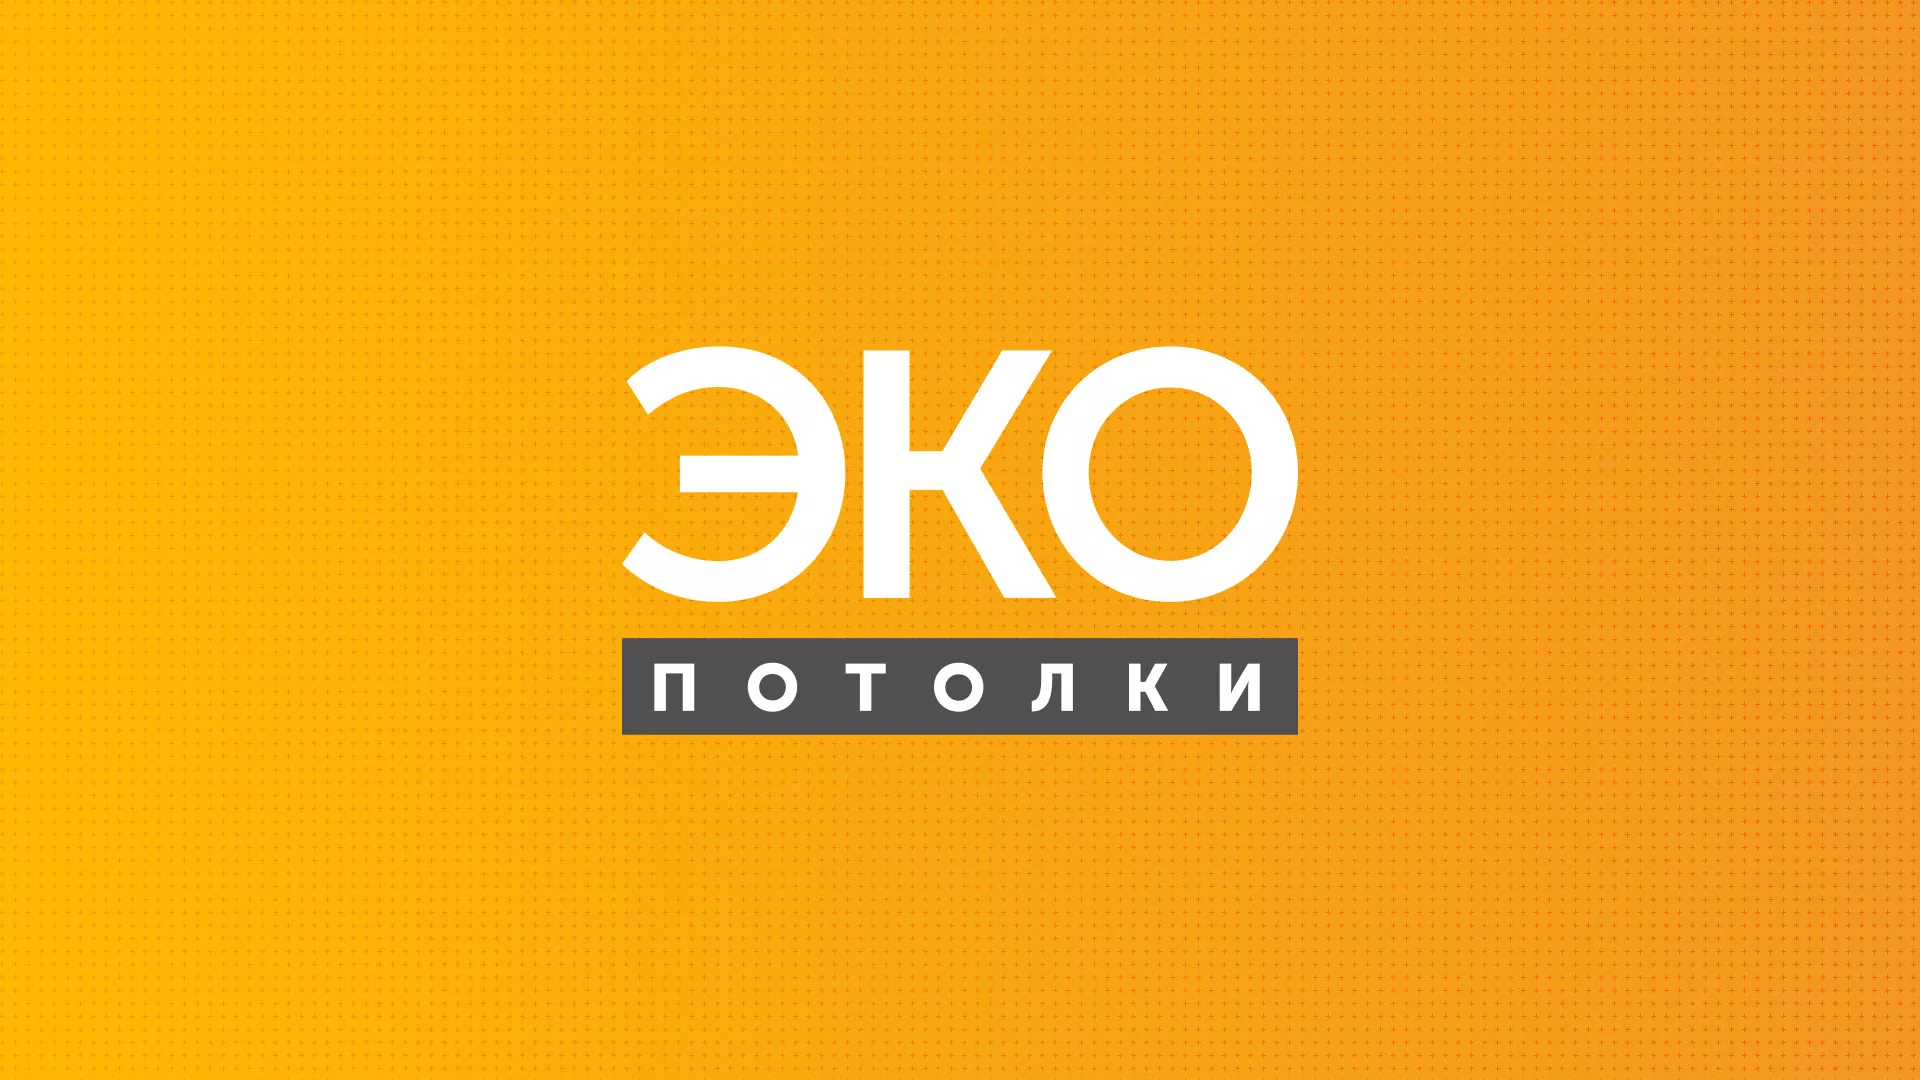 Разработка сайта по натяжным потолкам «Эко Потолки» в Острогожске